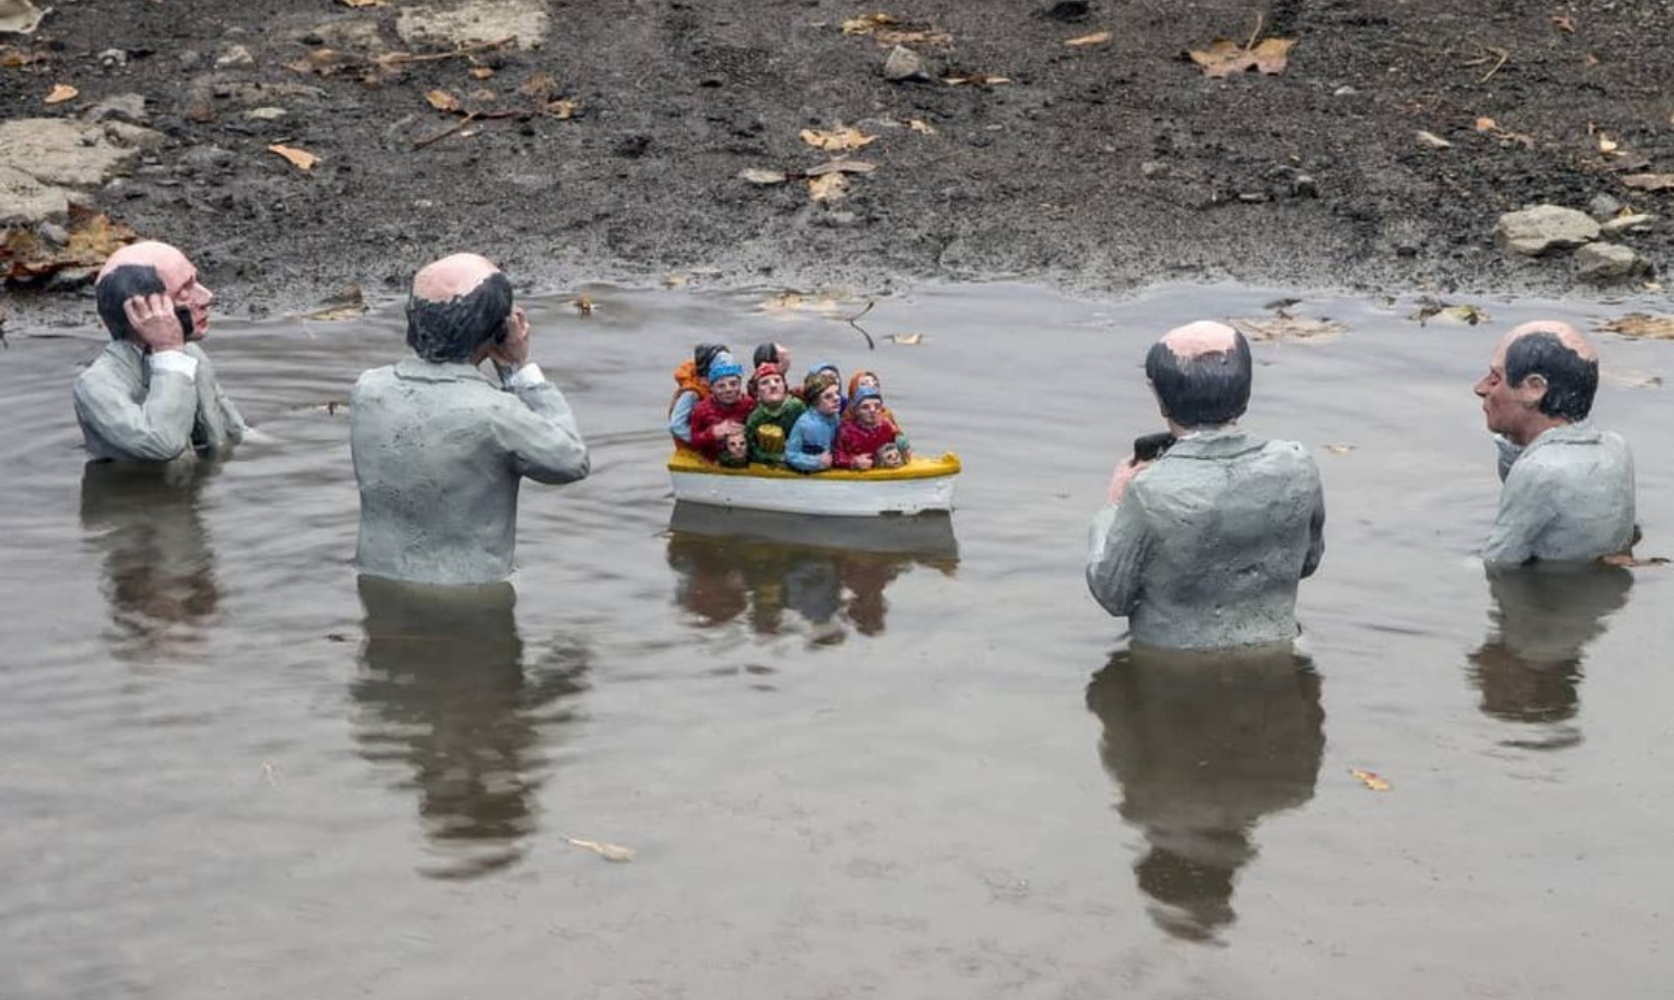 Isaac Cordal, un artista que enfrenta la crisis climática